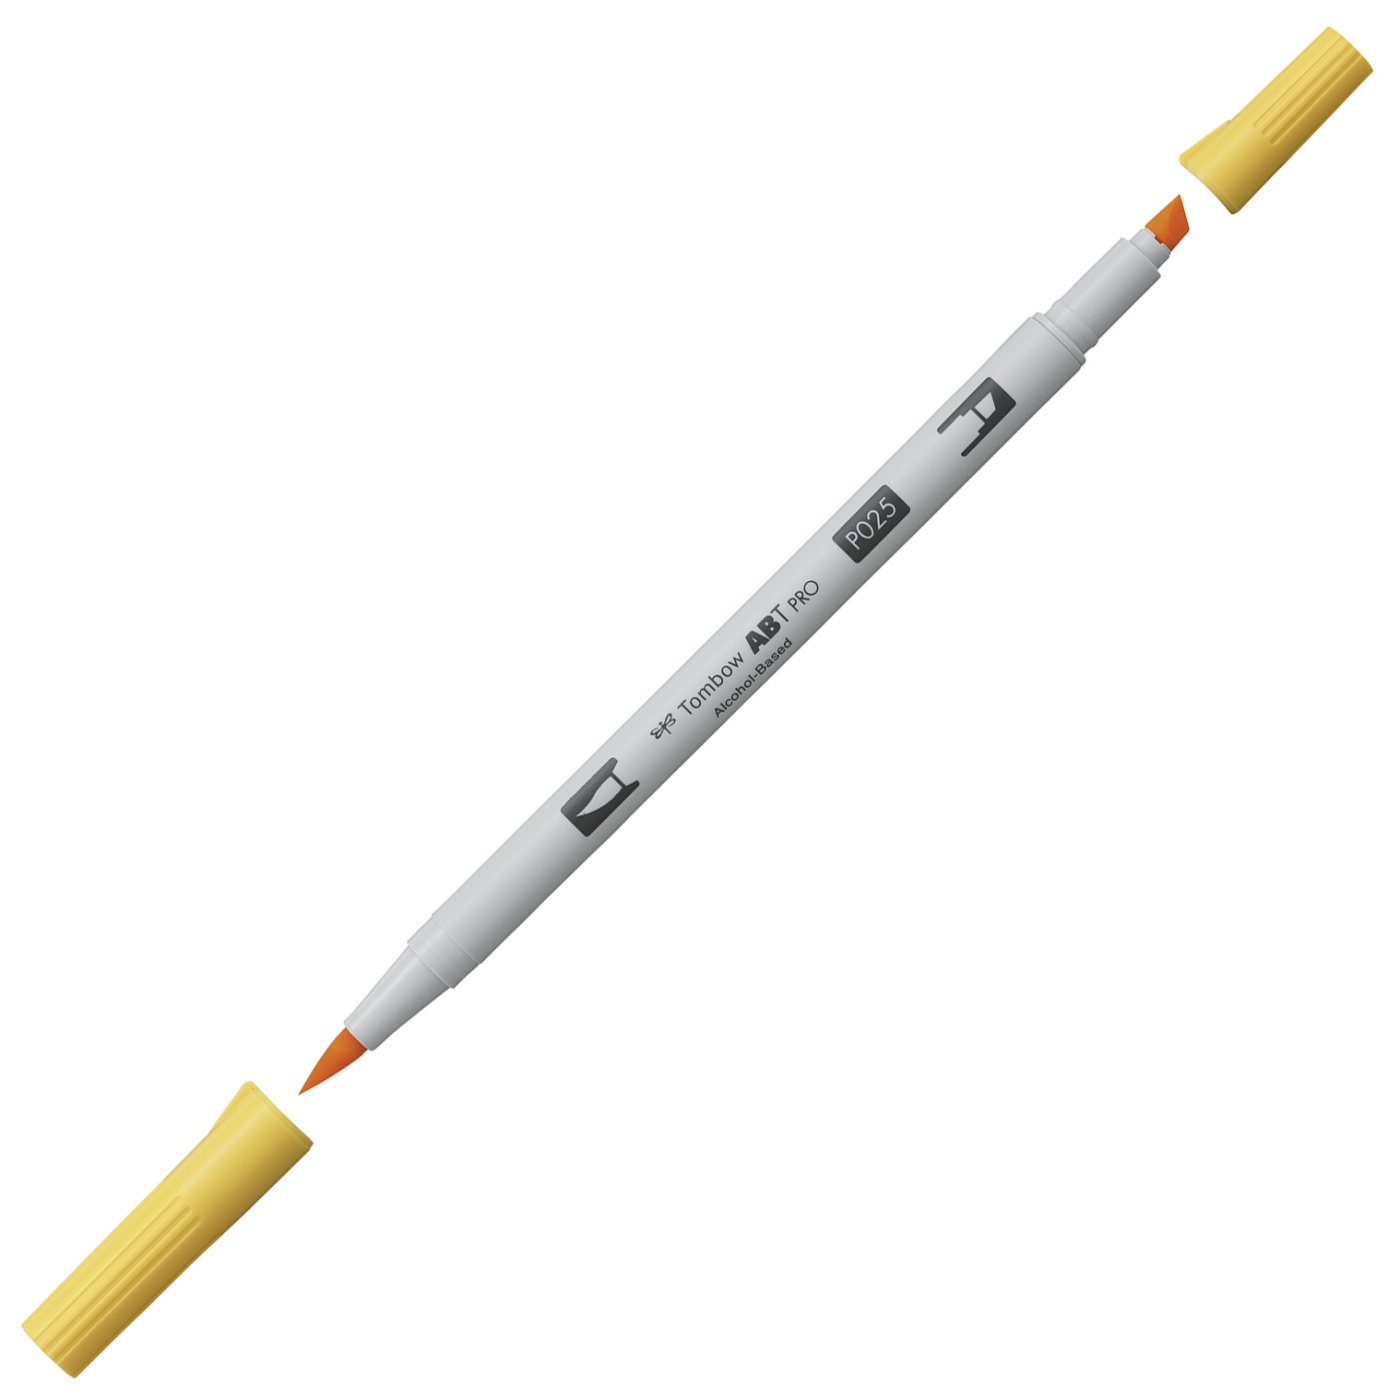 ABT PRO Dual Brush Pen 5-set Cold Grey in de groep Pennen / Kunstenaarspotloden en -stiften / Illustratiemarkers bij Voorcrea (101259)